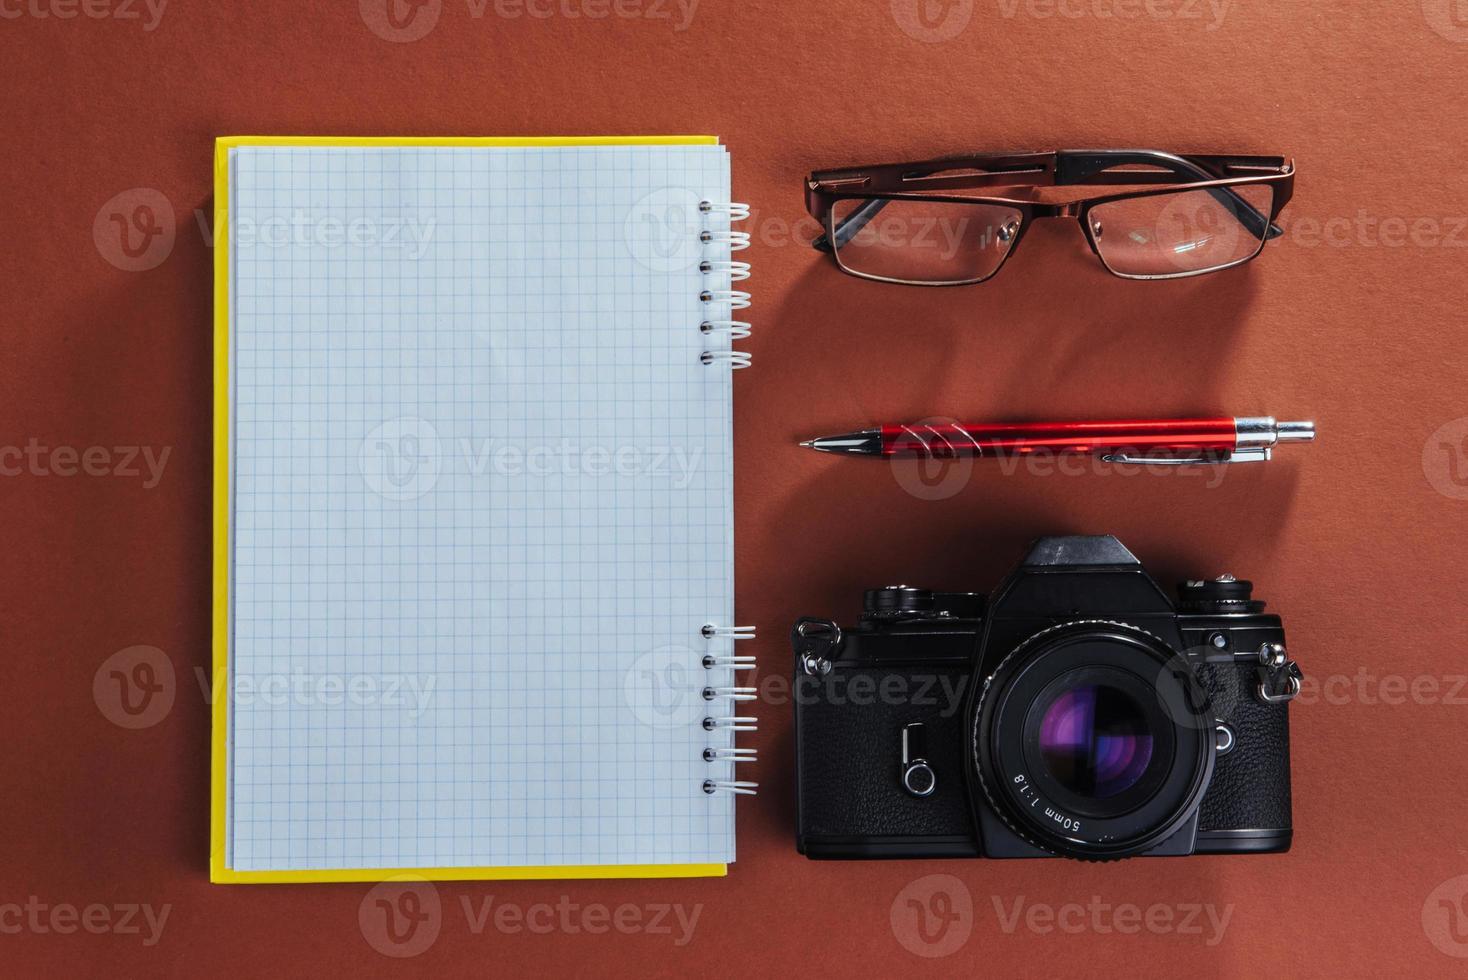 Kamera, Brille und Notizblock und Bleistift auf braunem Holzhintergrund foto